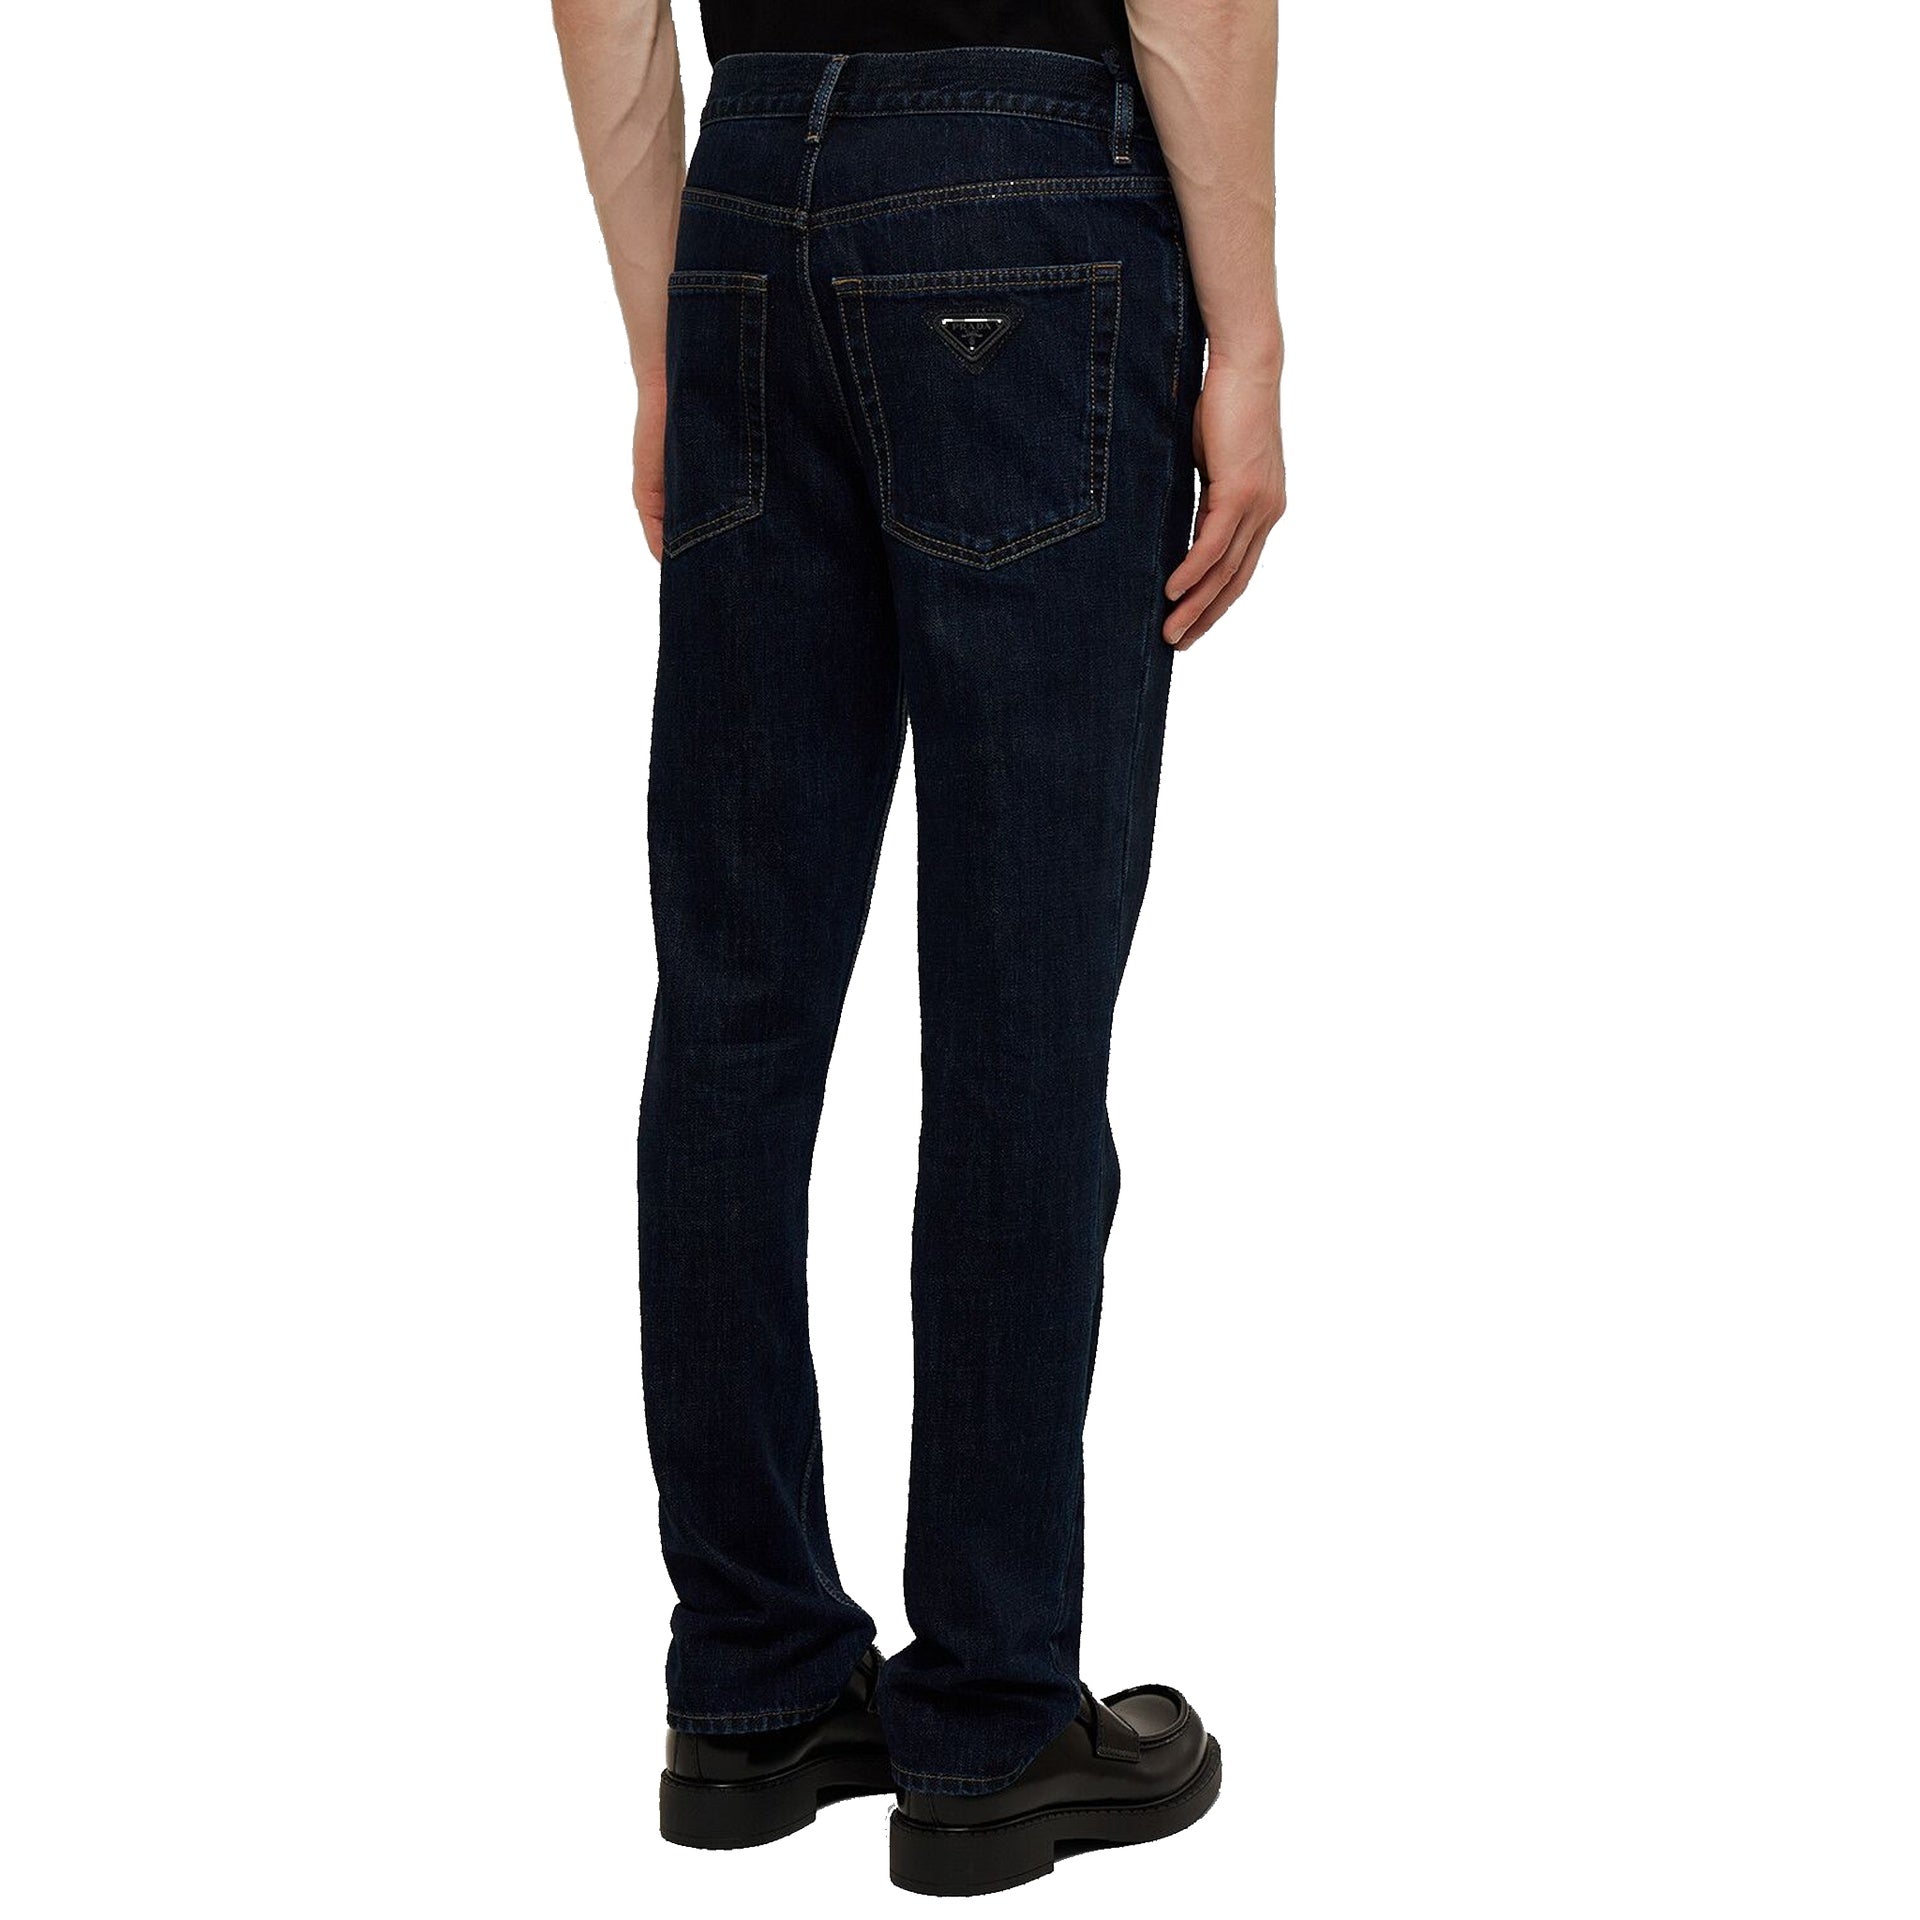 PRADA-Outlet-Sale-Prada Cotton Denim Jeans-MEN CLOTHING-ARCHIVIST